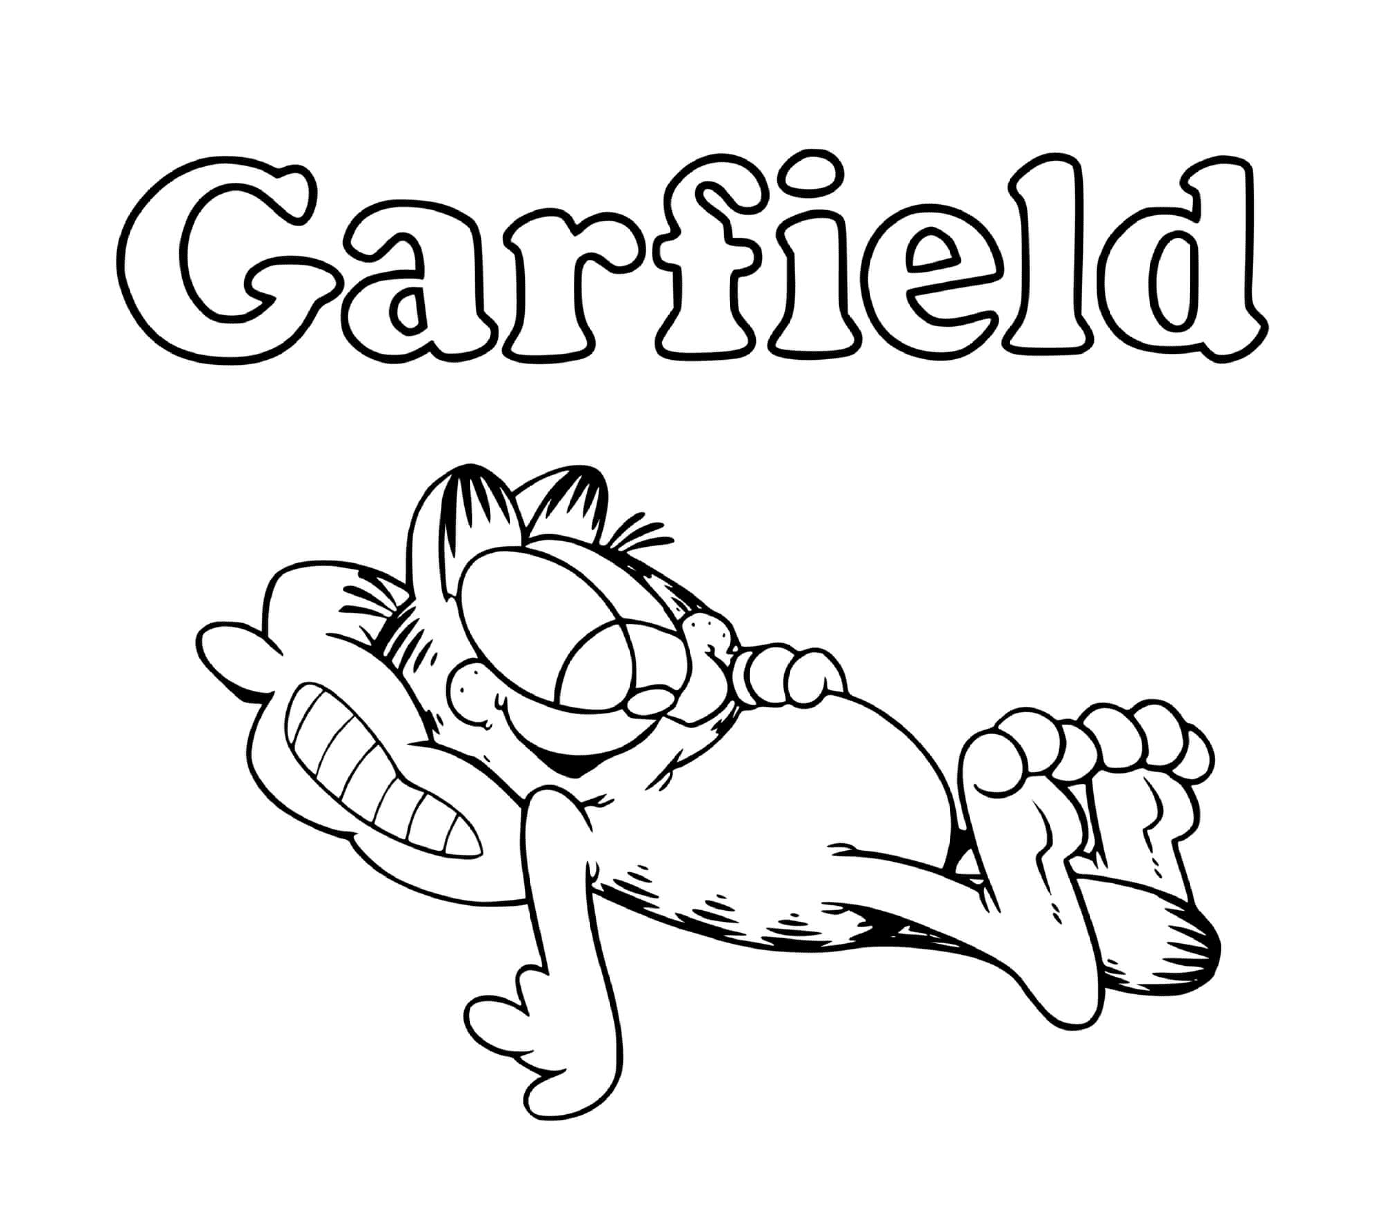  A Garfield le gusta comer y dormir 